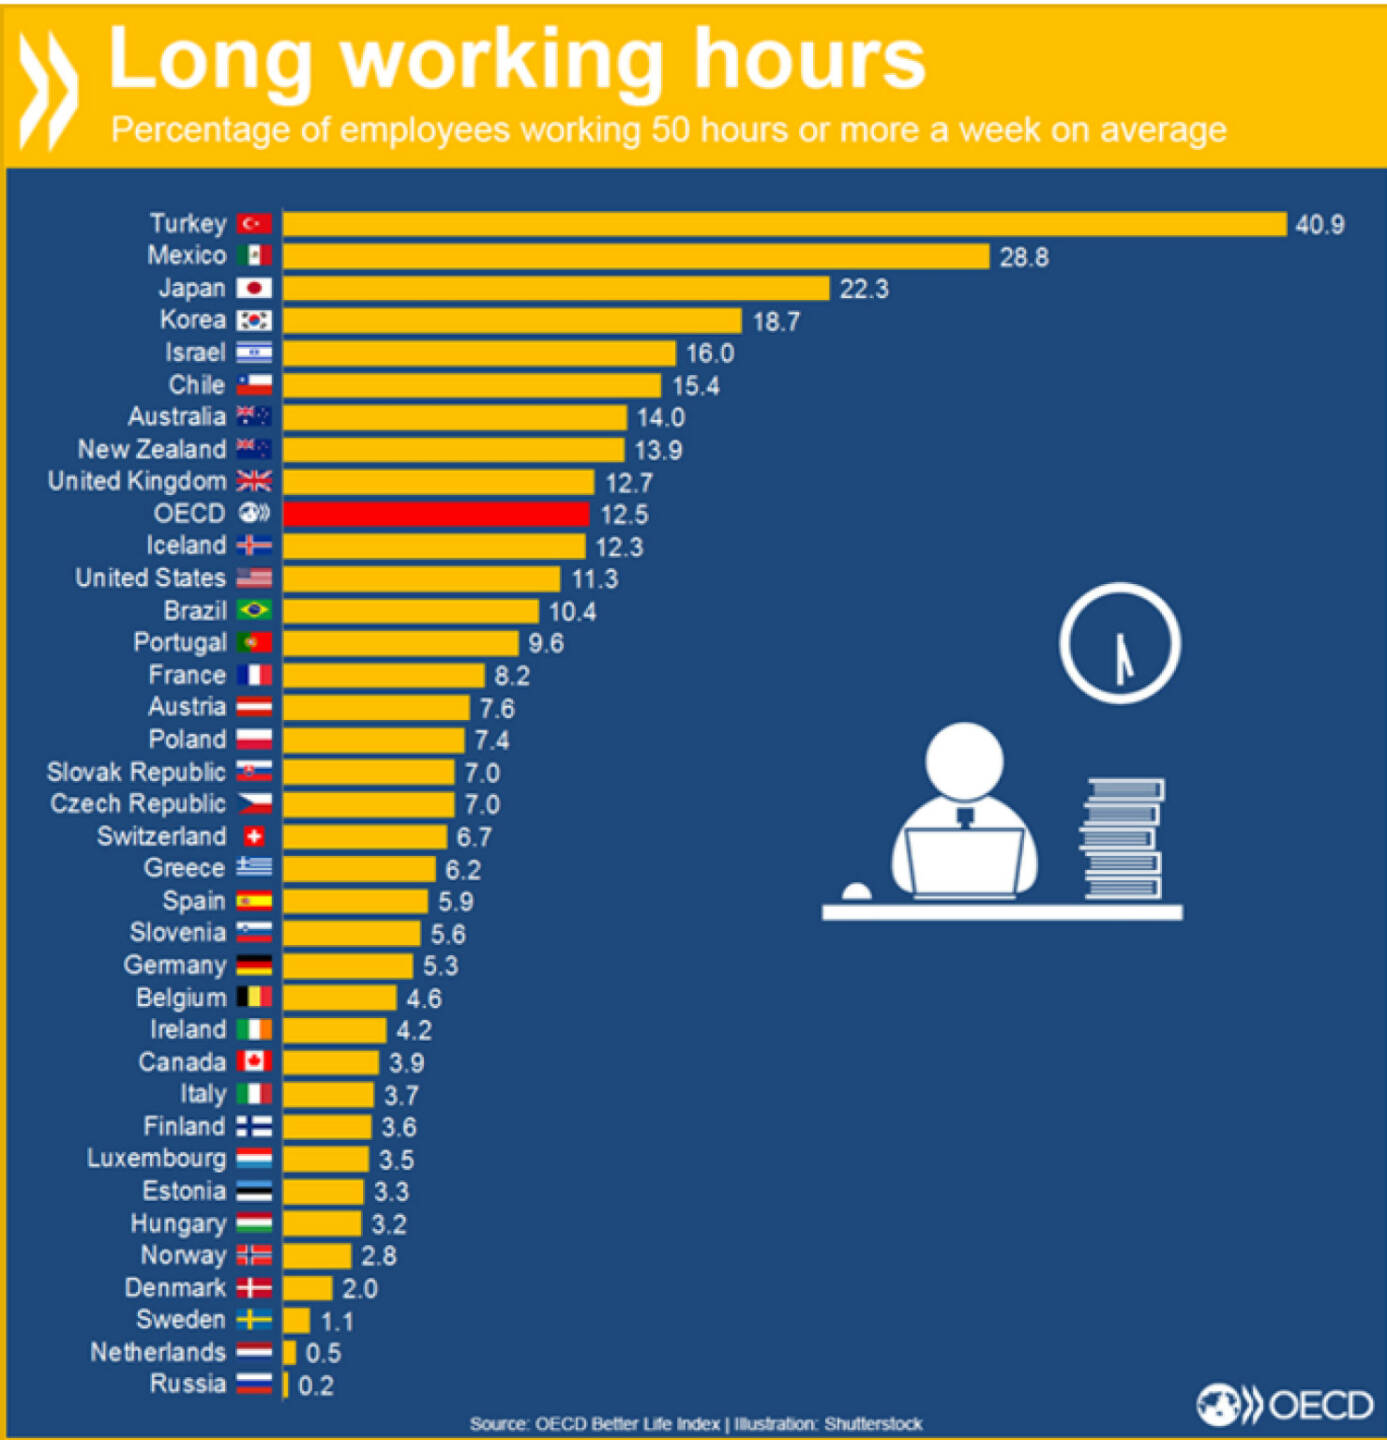 Langer Arbeitstag? In der Türkei arbeiten über 40 Prozent der Beschäftigten 50 Stunden oder mehr in der Woche. In Deutschland sind es 5.3 Prozent. 
http://bit.ly/1IO7tMi